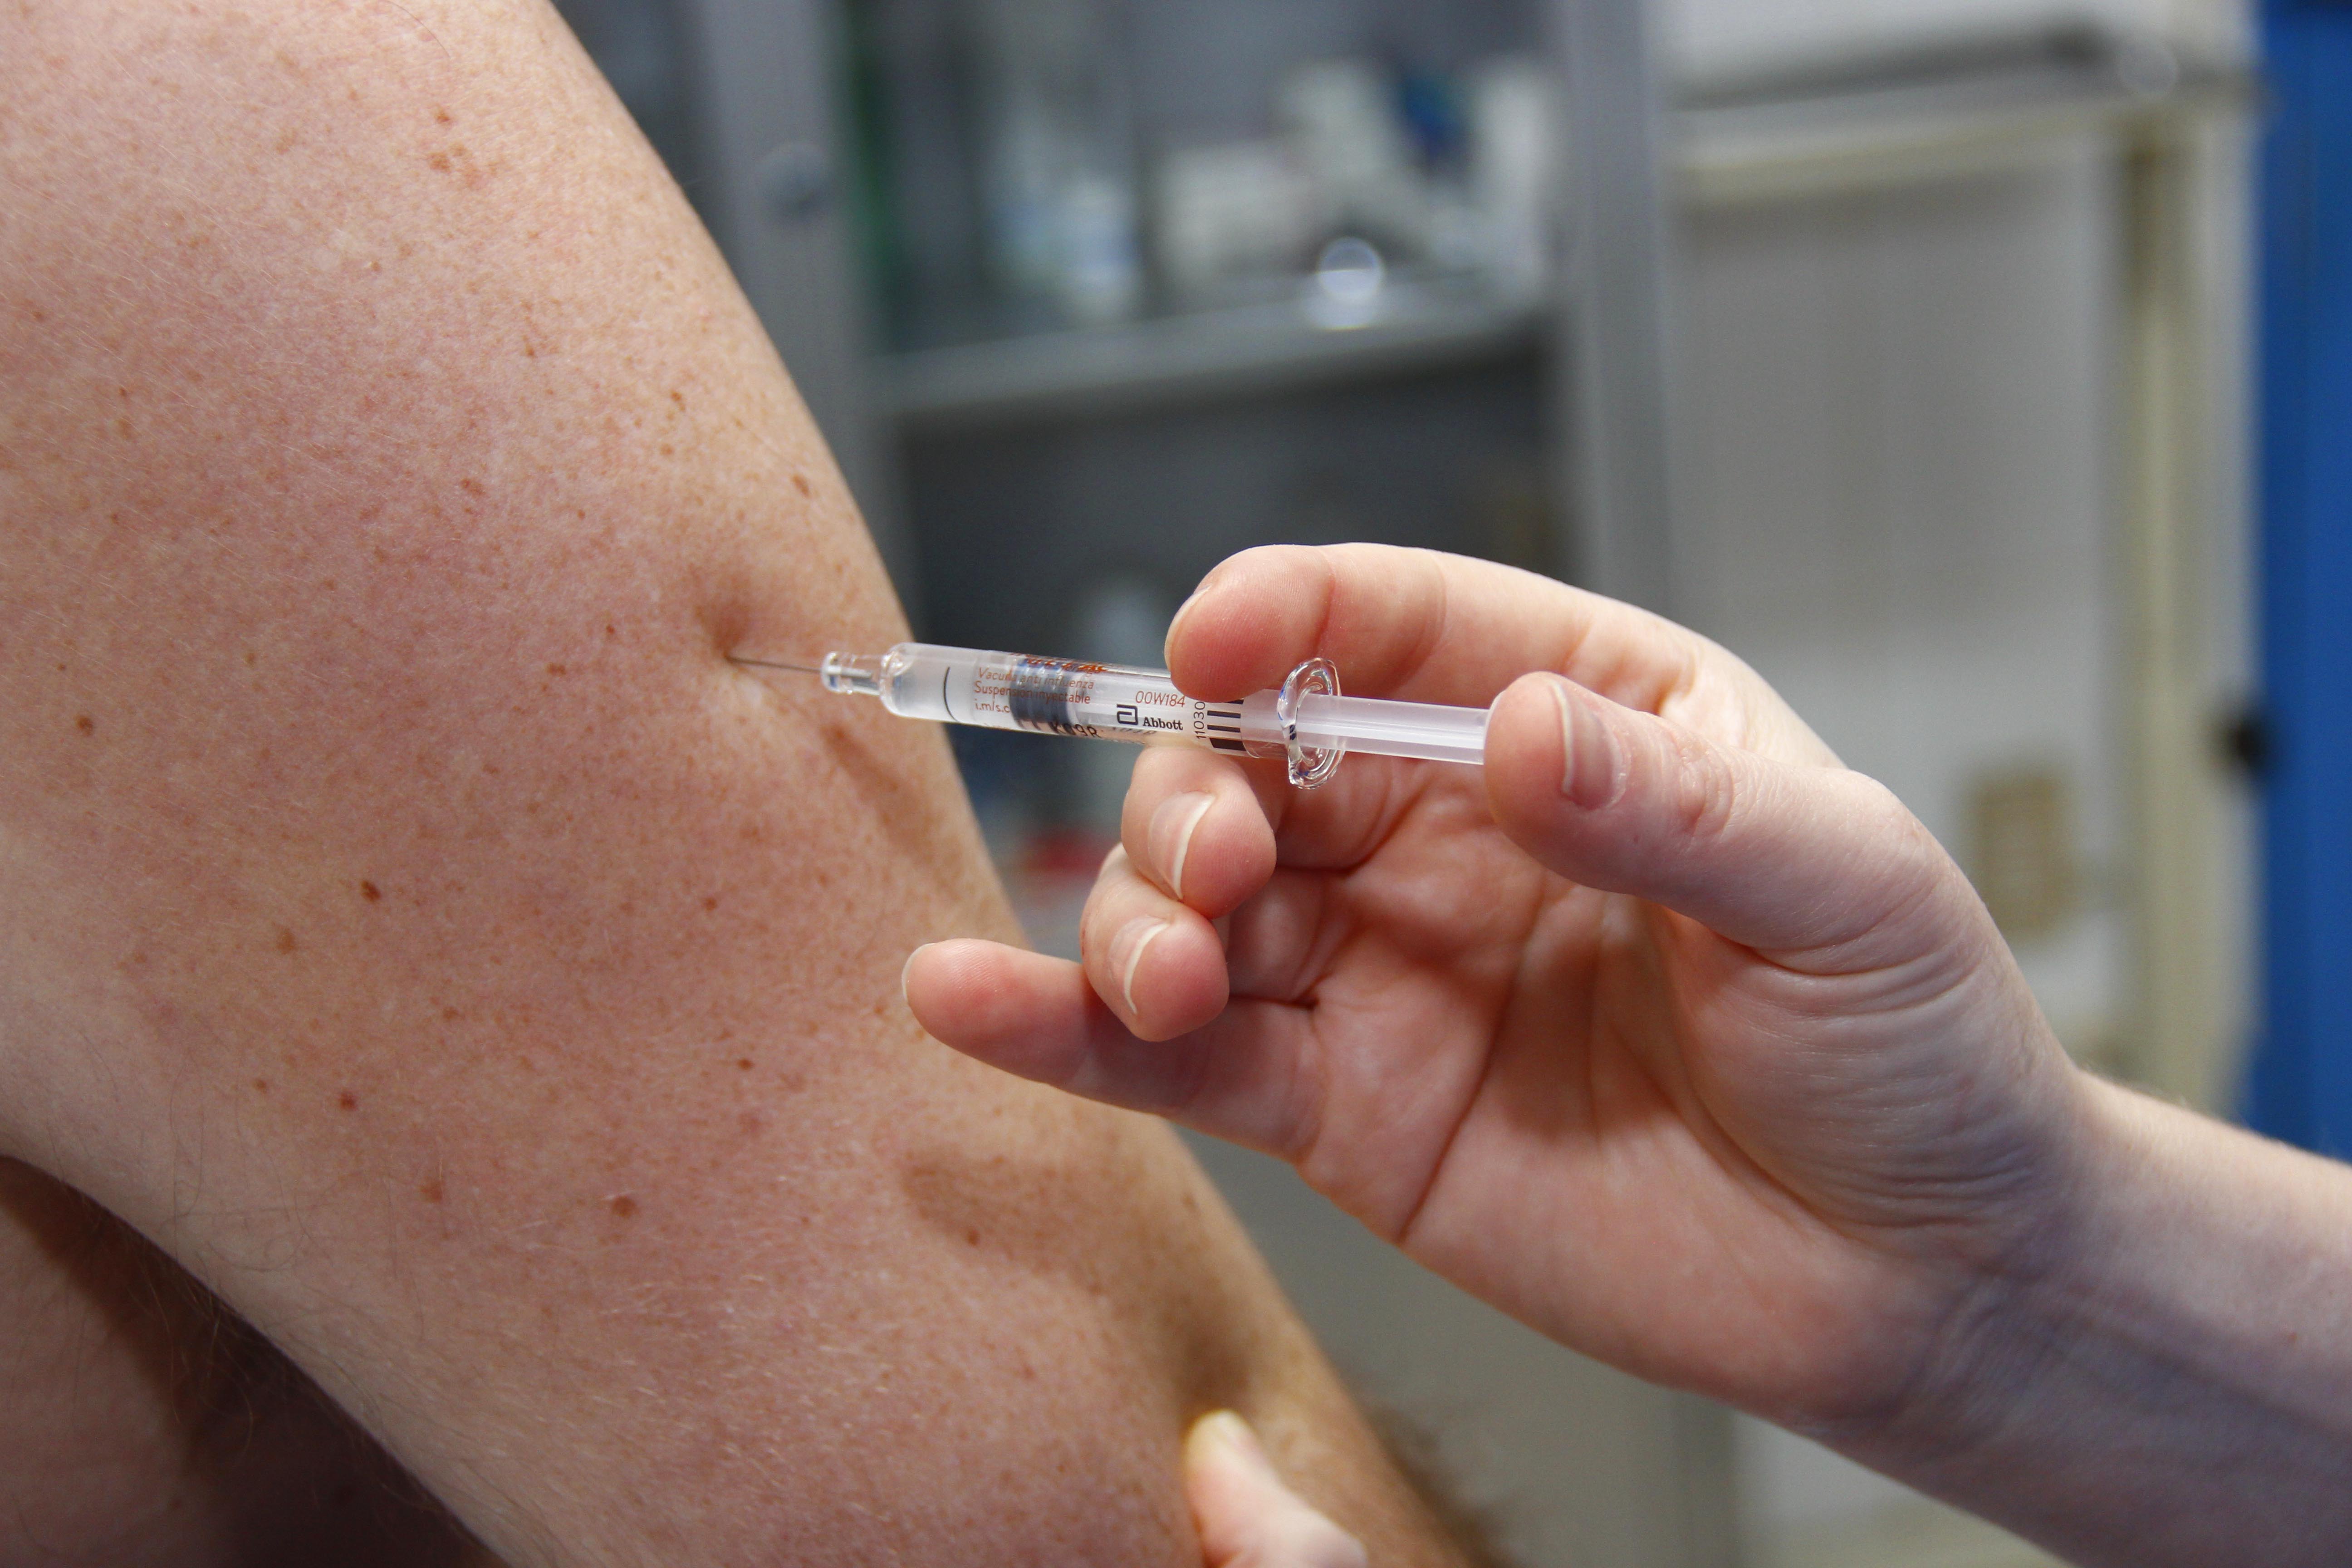 Análisis: “A mayor velocidad de vacunación ante el COVID-19 mejor”